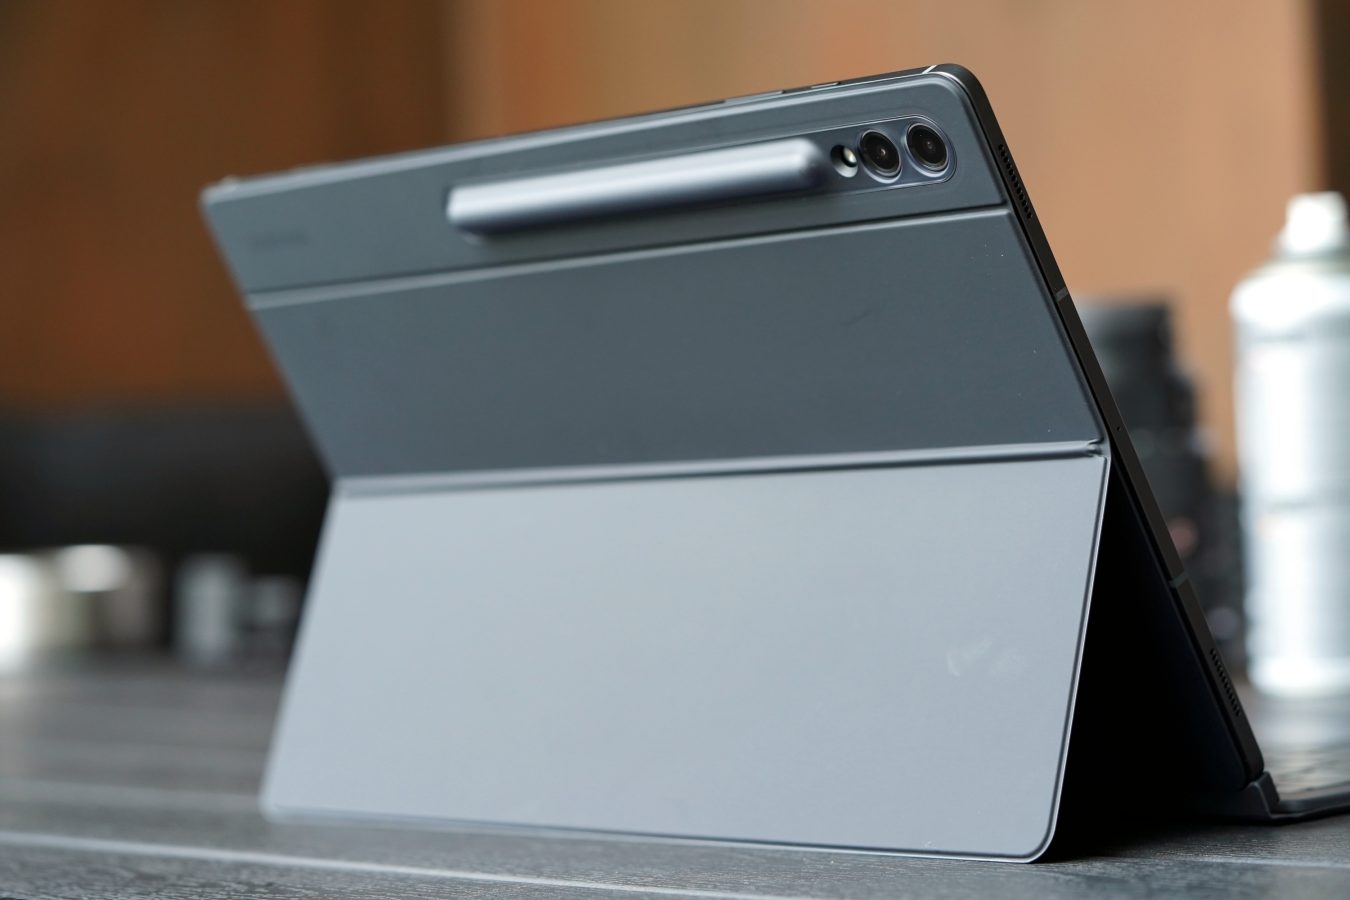 Recenzja Samsung Galaxy Tab S9 Ultra 5G Tabletowo